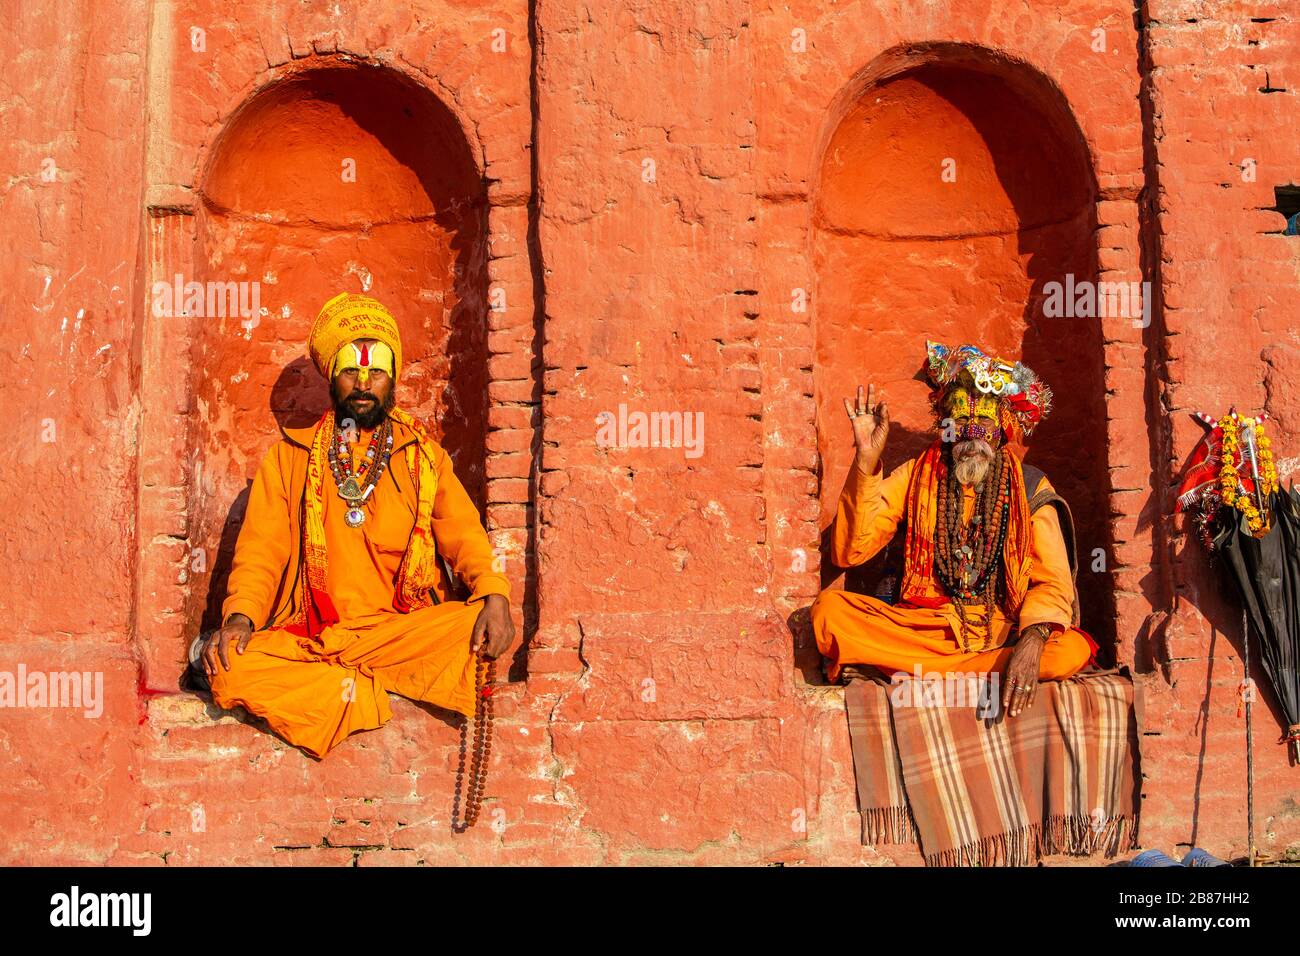 Sadu portraits at Pashupatinath in Kathmandu, Nepal Stock Photo